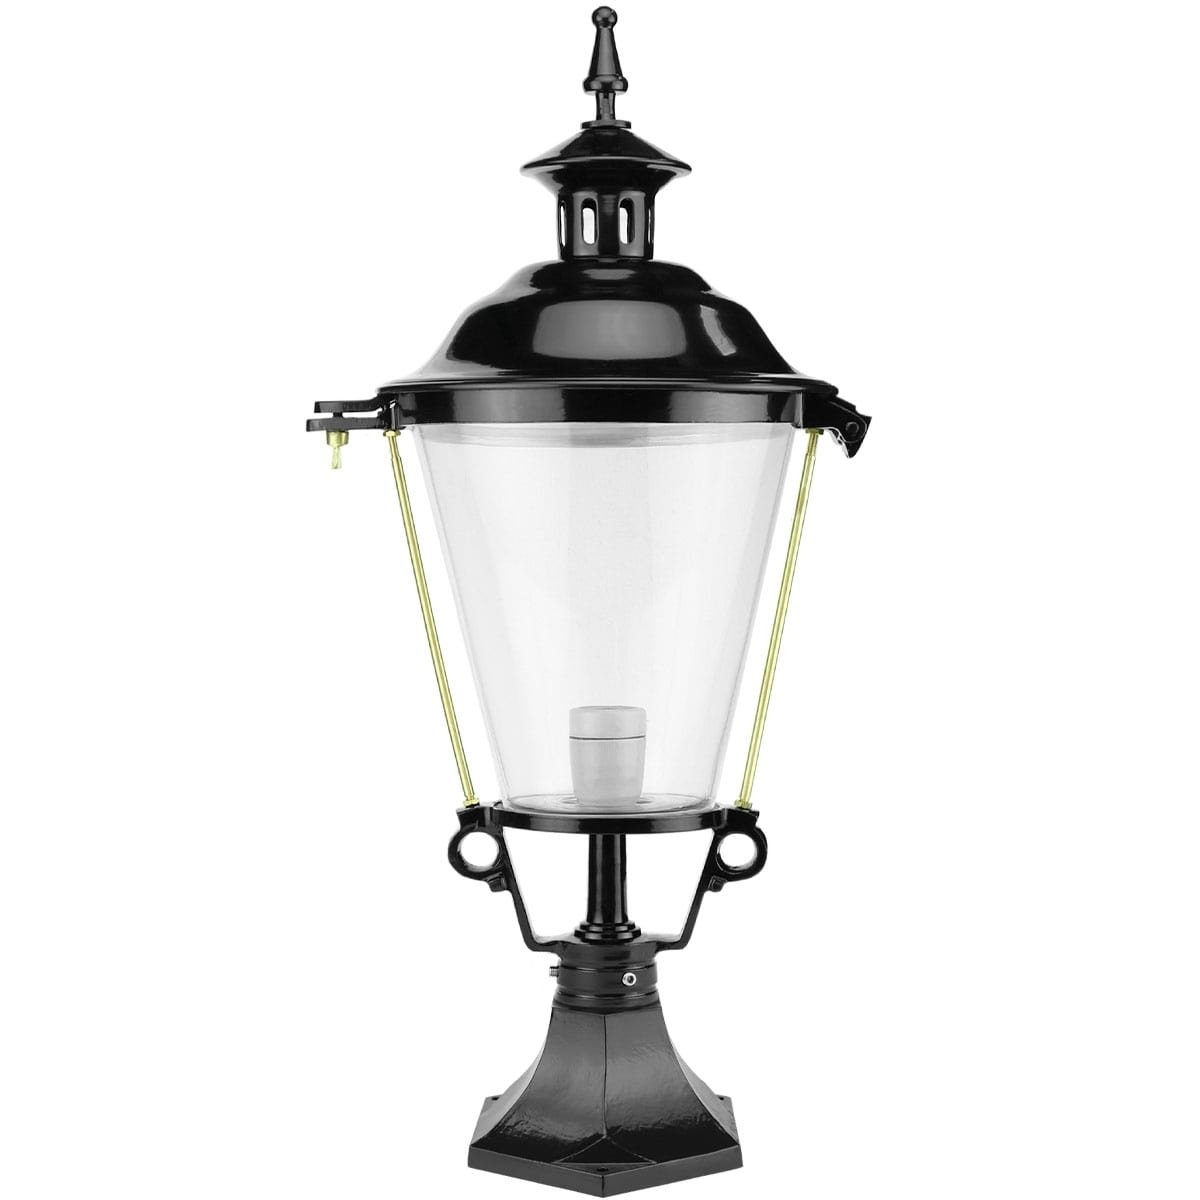 Floor lantern outdoor Lieshout - 72 cm